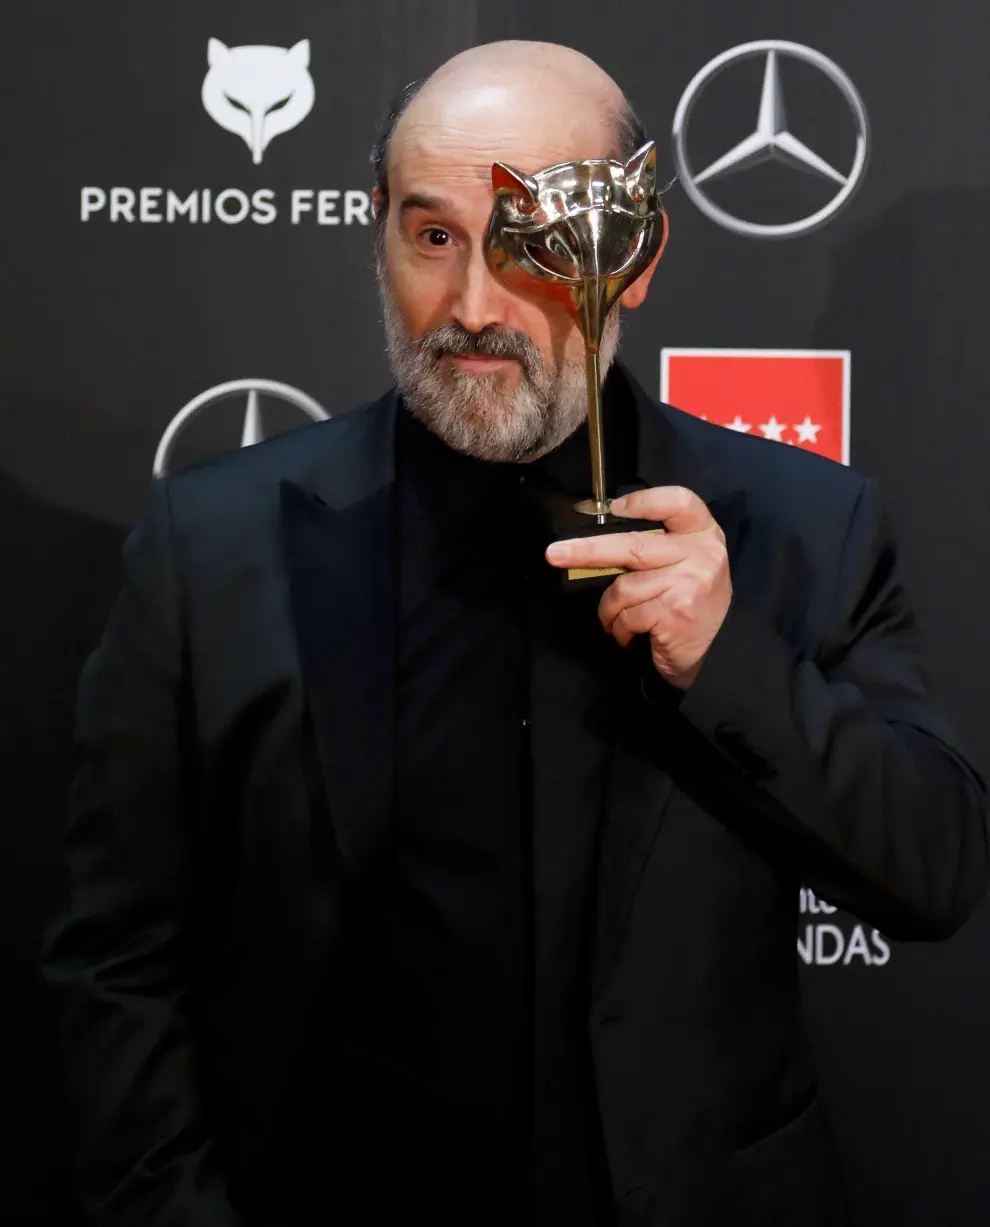 El actor Javier Cámara posa en la alfombra roja tras recoger su galardón al "Mejor Actor Protagonista" durante la gala de los Premios Feroz 2020